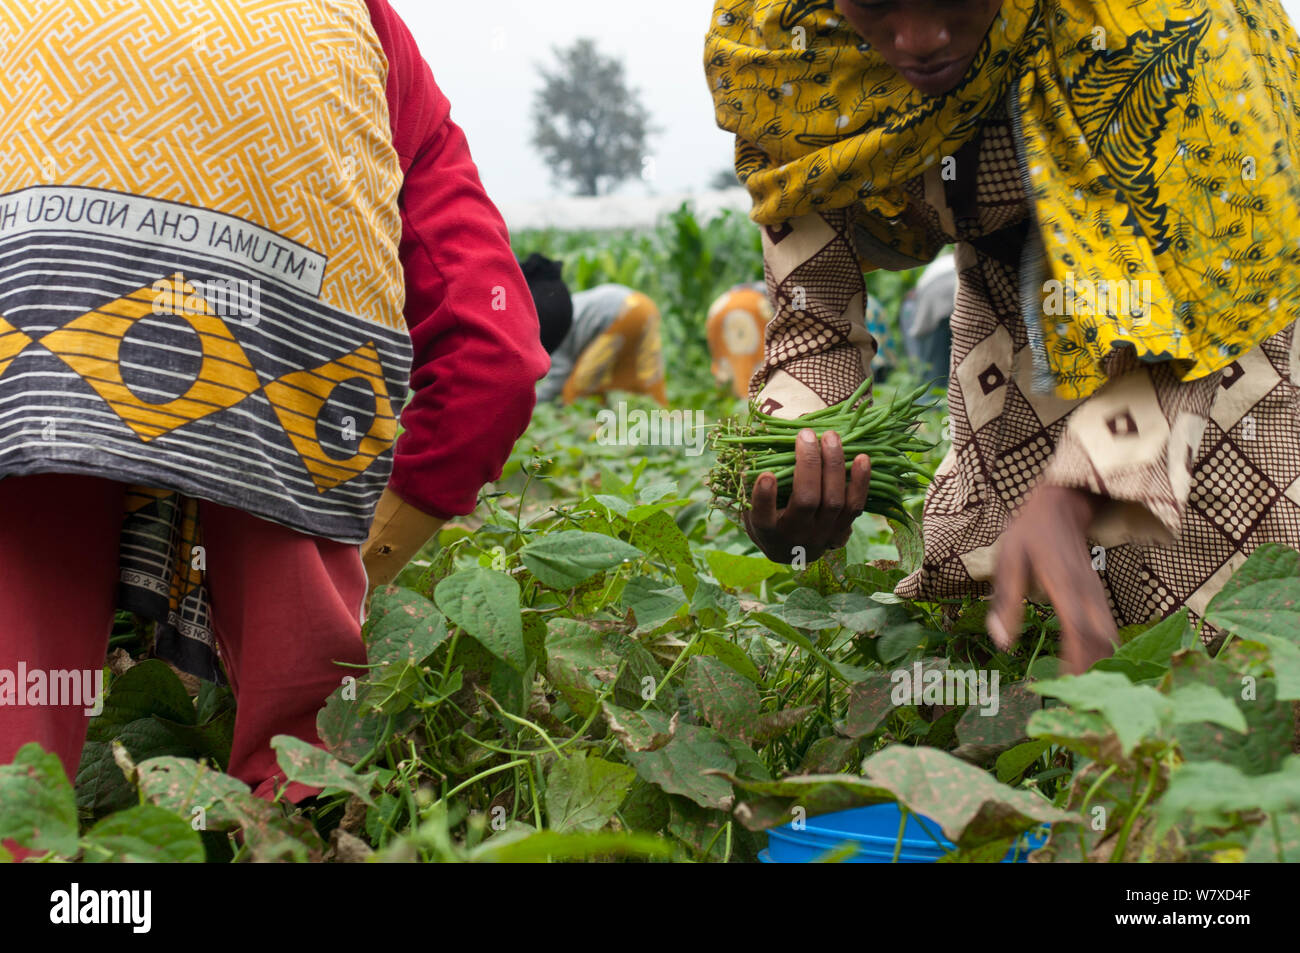 La récolte des haricots verts des femmes (Phaseolus vulgaris) sur les exploitations agricoles de haricots. Les femmes portent des vêtements traditionnels (&# 39;kangas&# 39# 39 ; et &&# 39;kitenge ;). Tanzanie, Afrique de l'Est. Août 2011. Banque D'Images